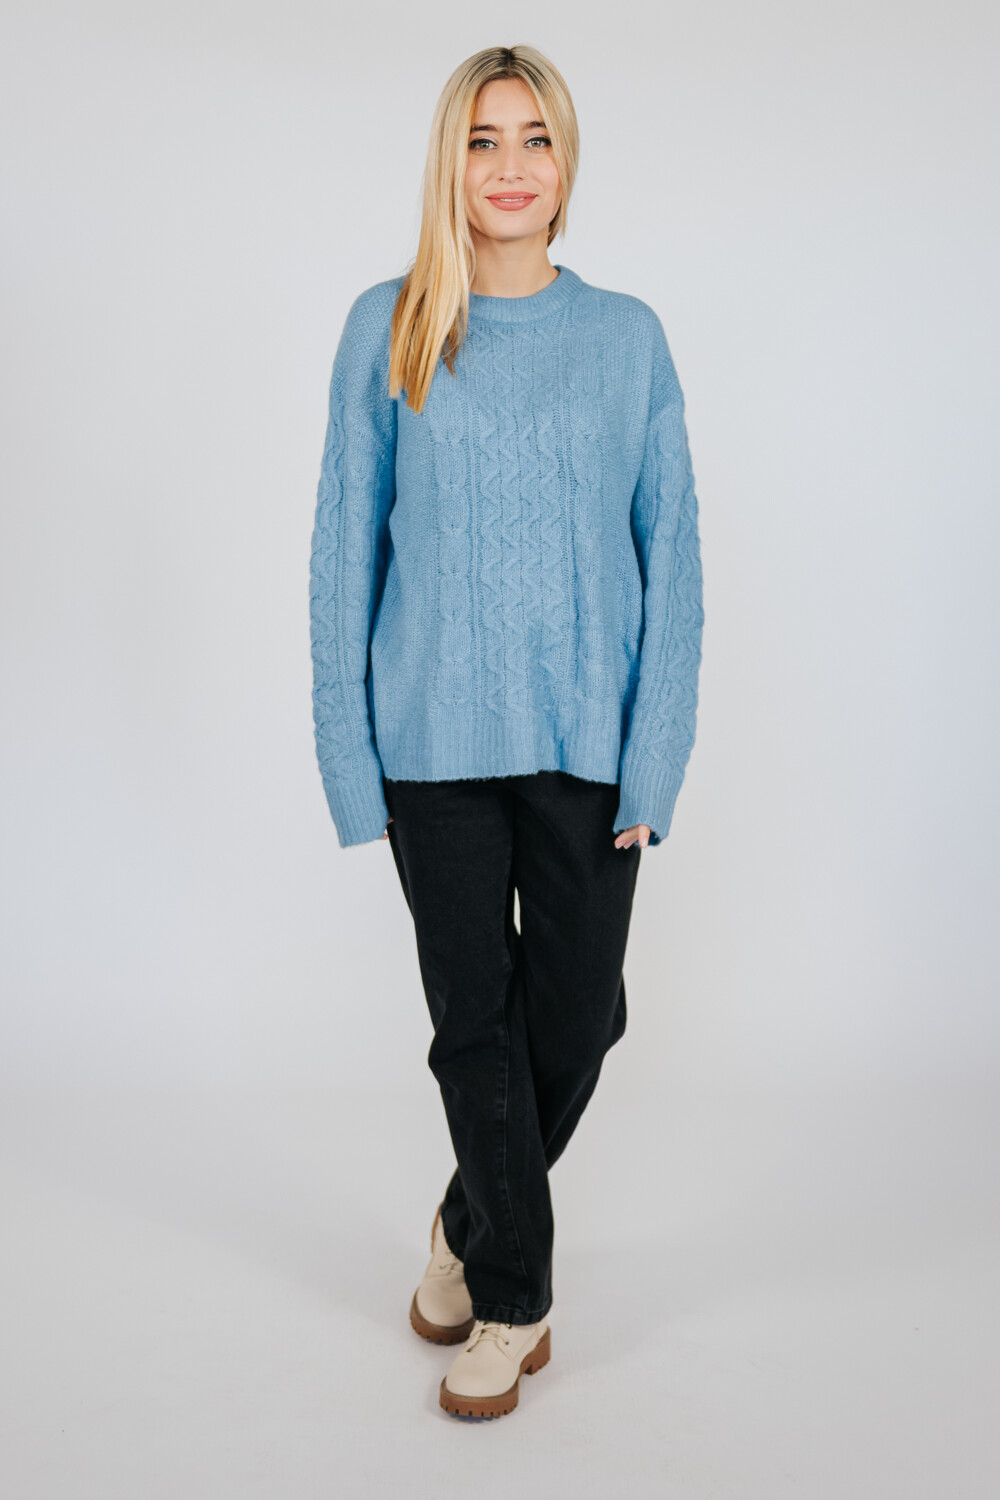 Sweater Cea 0203 Azul Grisaceo